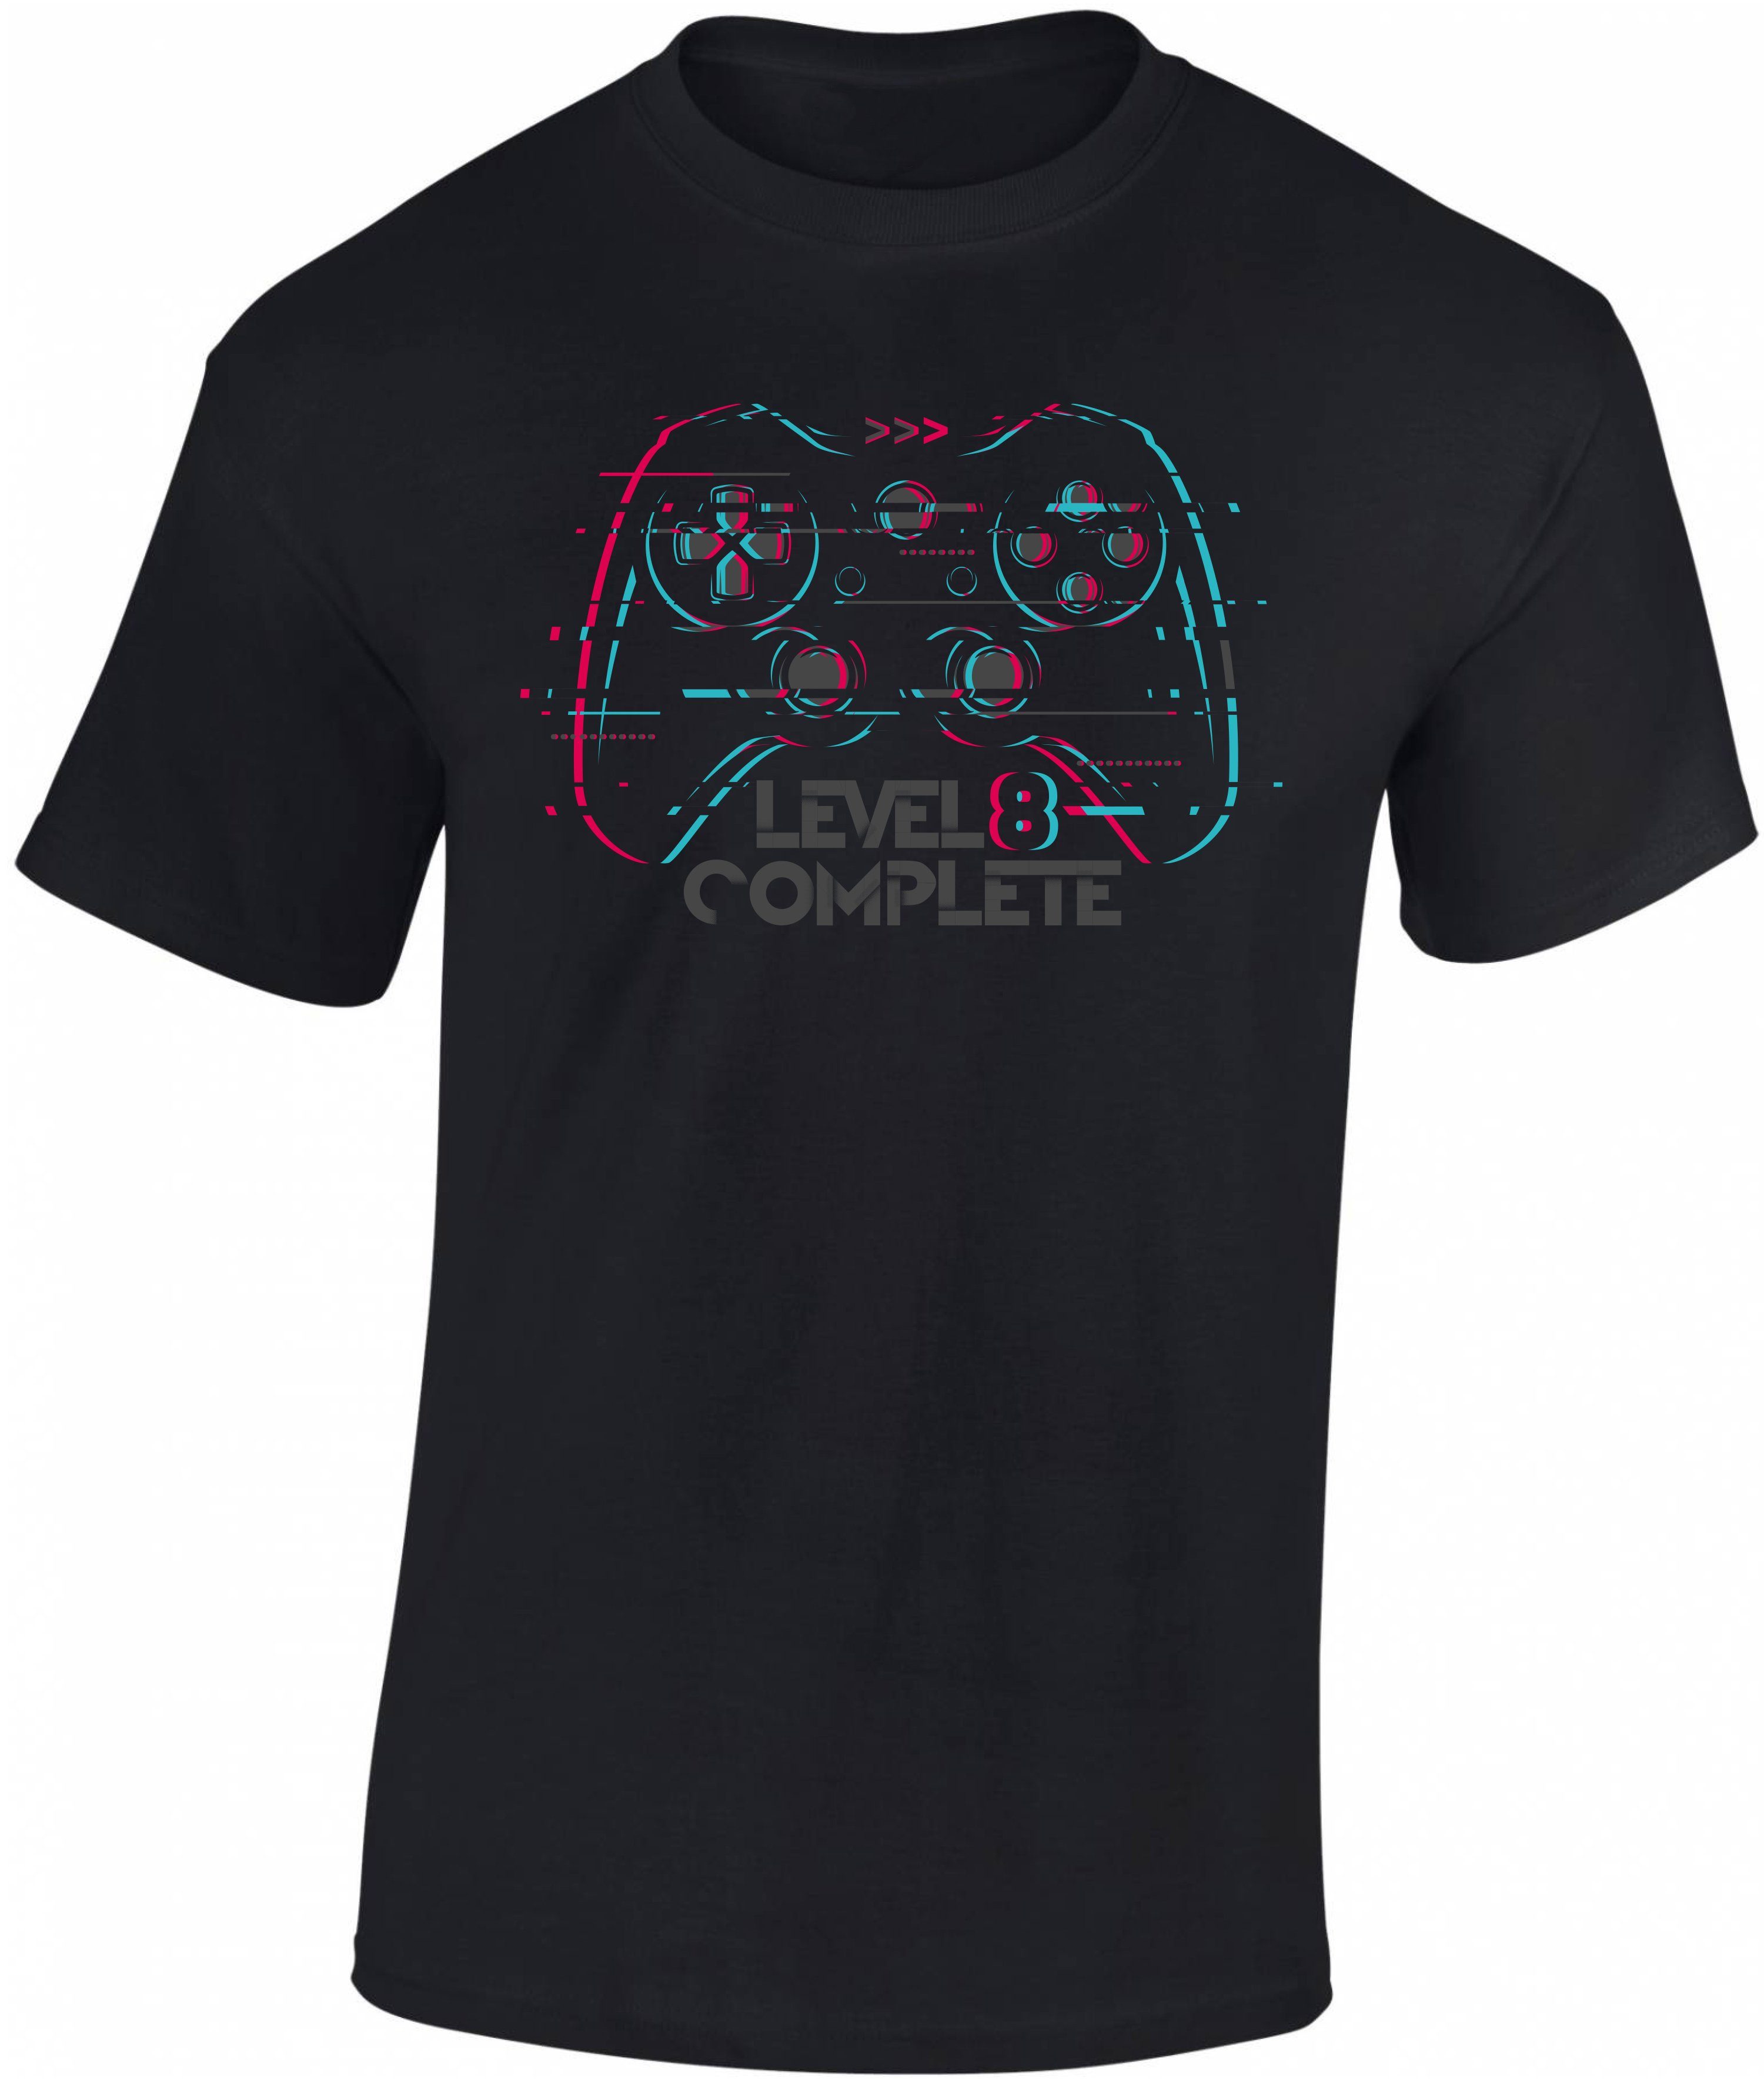 Baddery Print-Shirt Jungen Gamer T-Shirt zum 8. Geburtstag : Level 8 Complete hochwertiger Siebdruck, aus Baumwolle